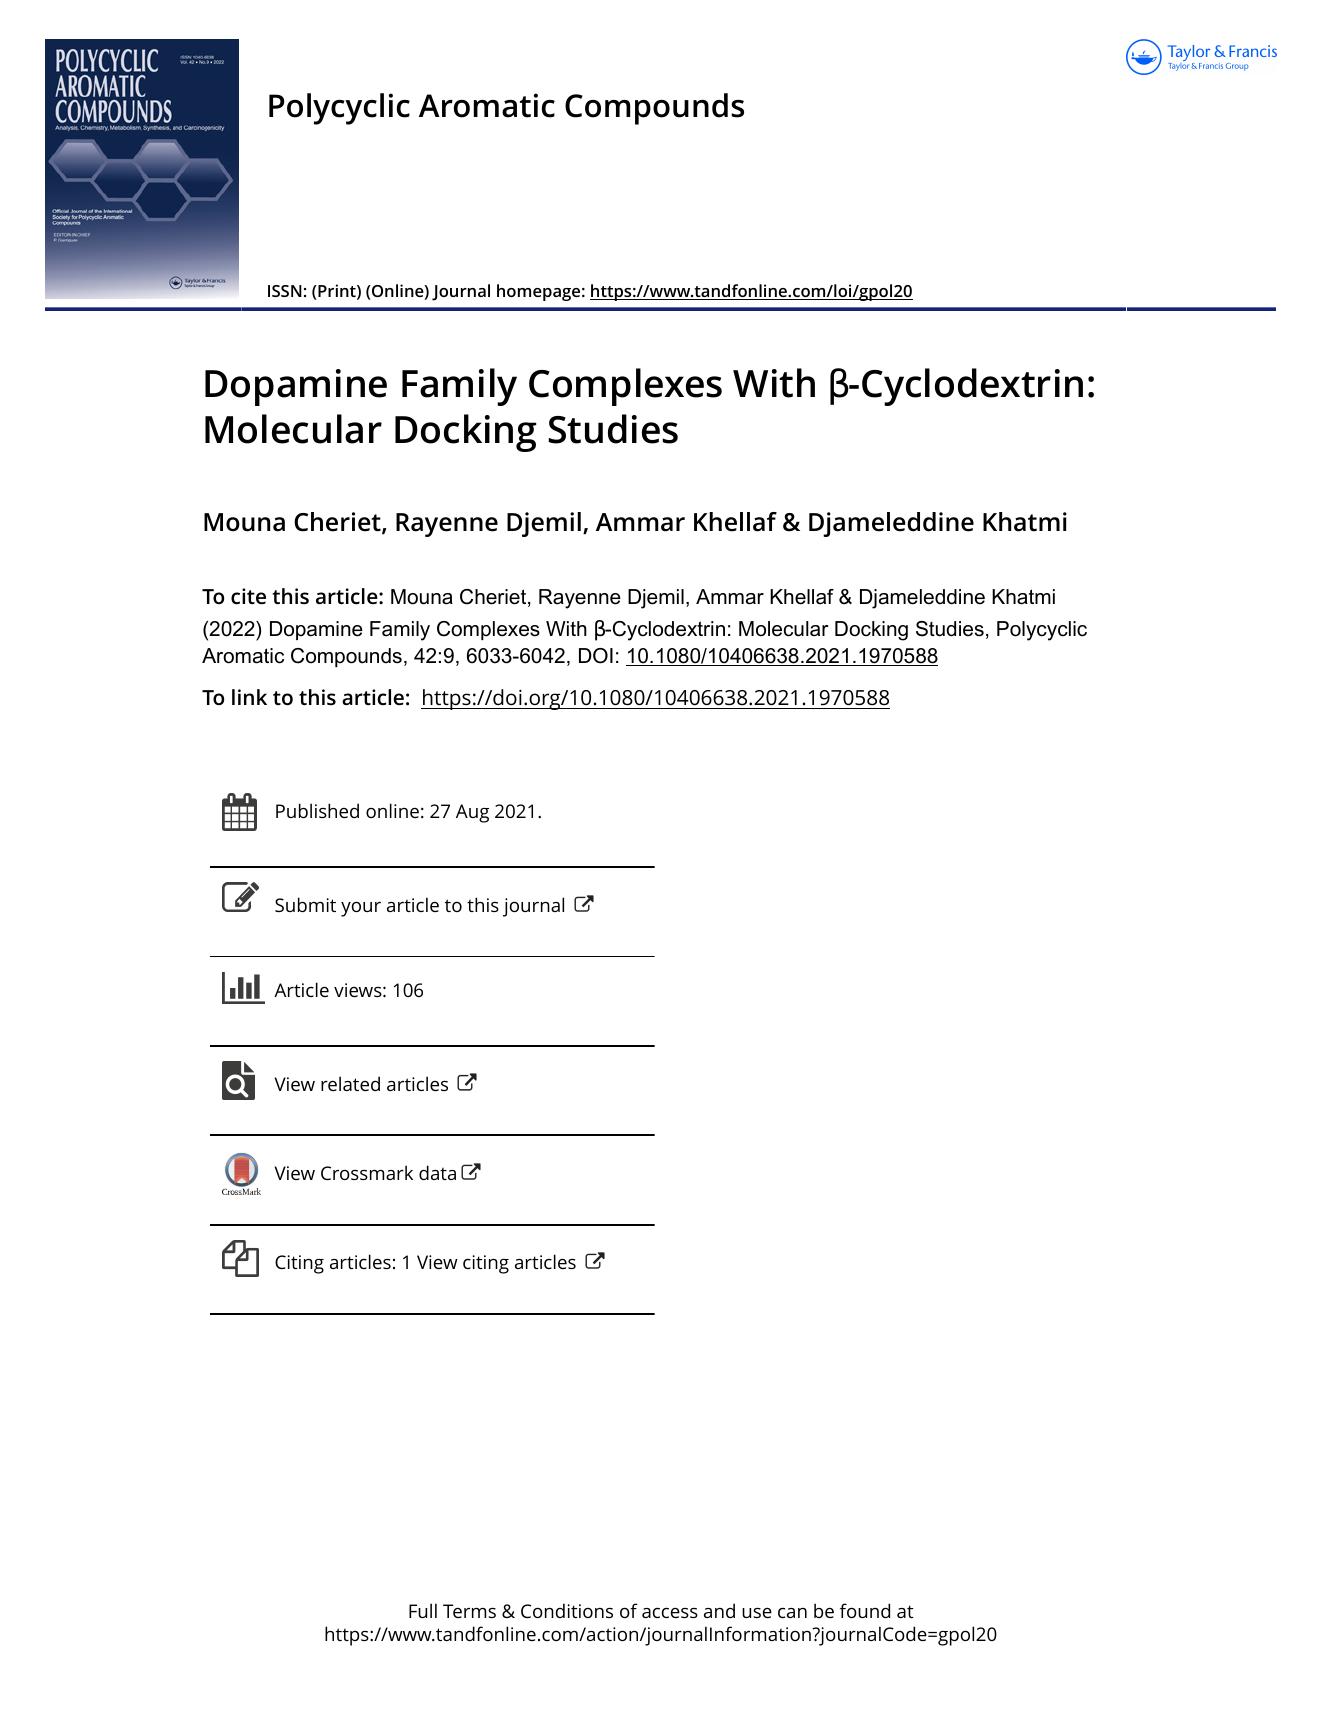 Dopamine Family Complexes With Î²-Cyclodextrin: Molecular Docking Studies by Cheriet Mouna & Djemil Rayenne & Khellaf Ammar & Khatmi Djameleddine